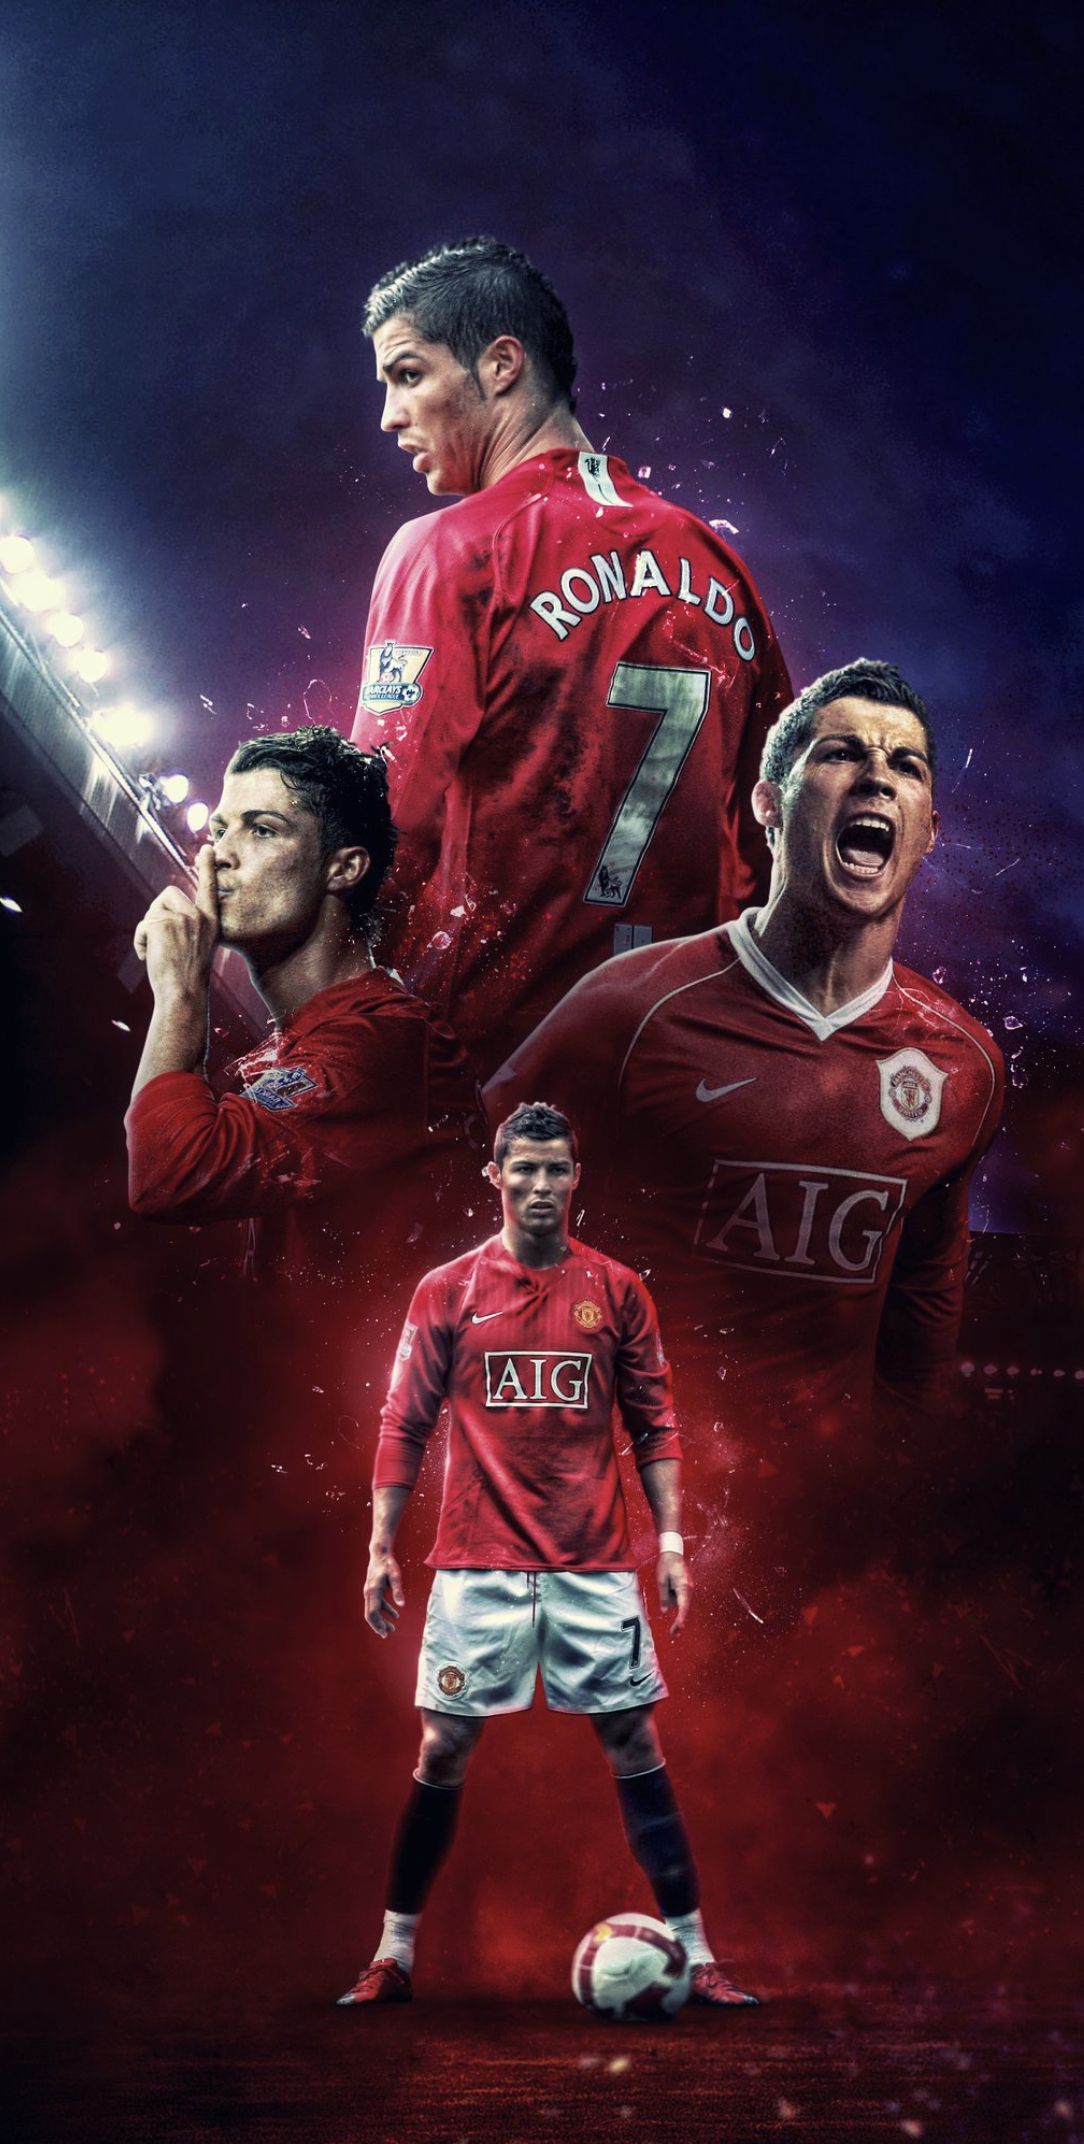 Ronaldo Man U. Manchester united ronaldo, Cristiano ronaldo wallpaper, Cristiano ronaldo manchester